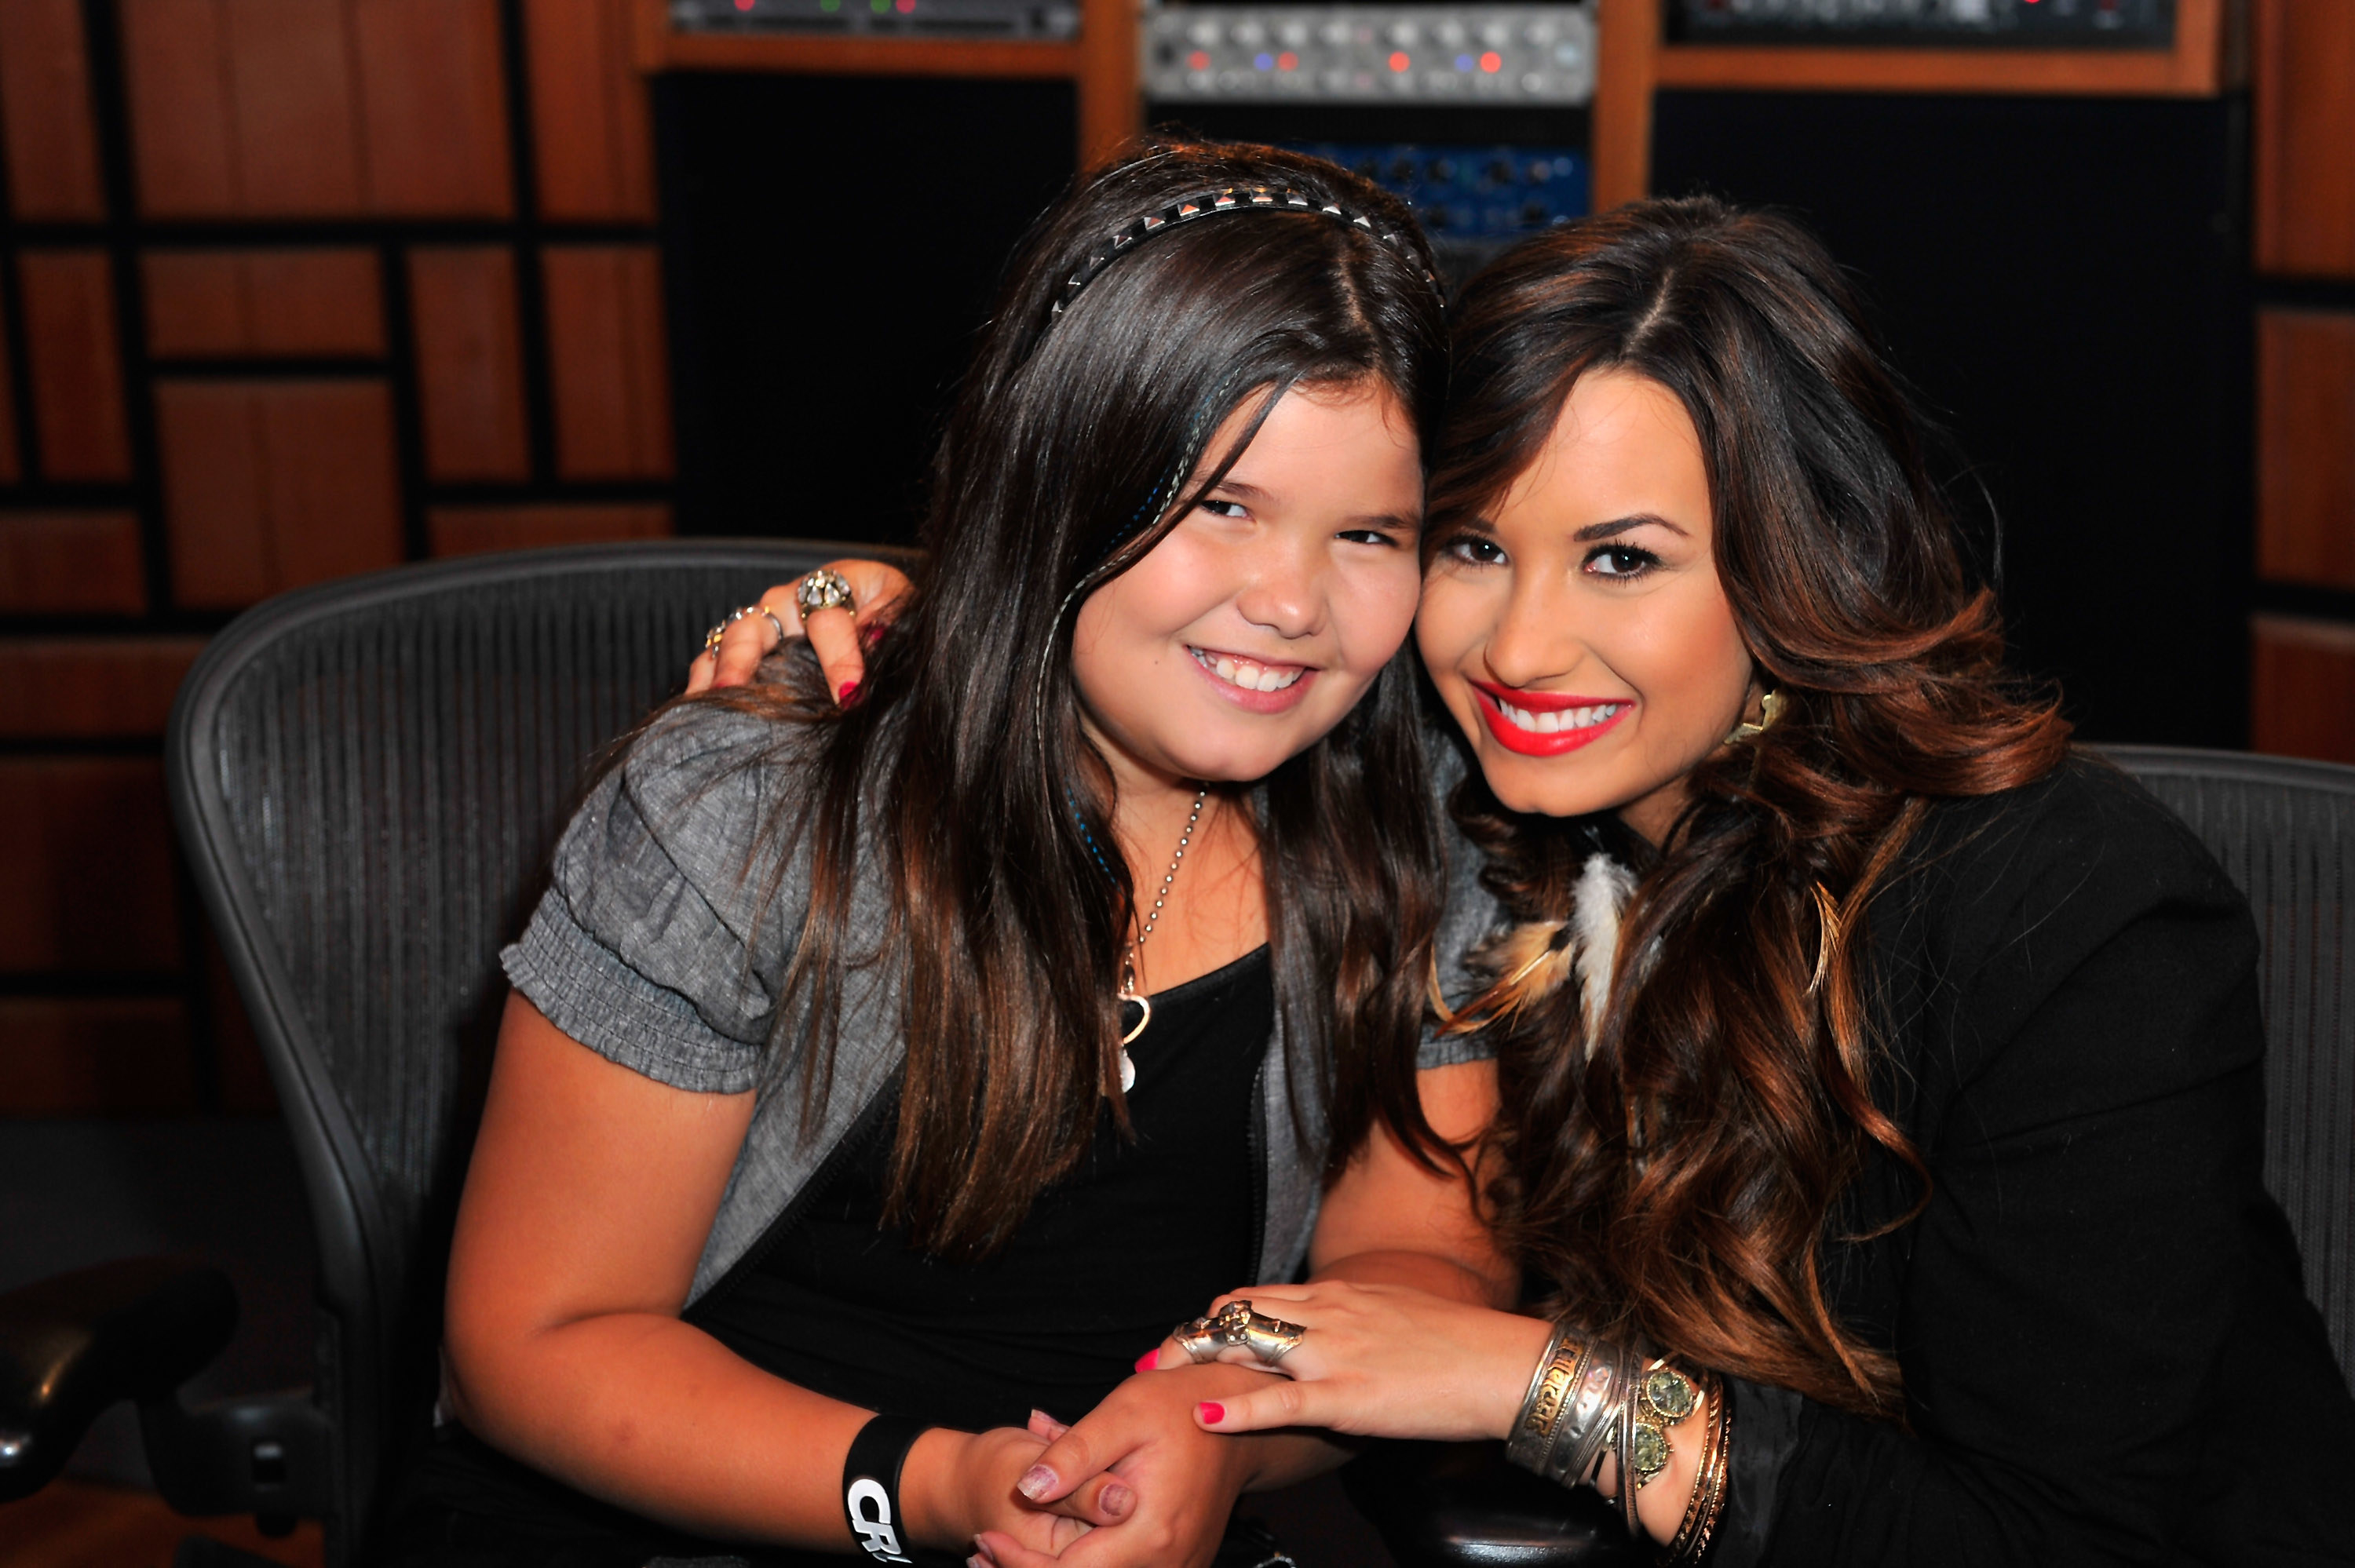 Demi Lovato and actress sister Madison De La Garza